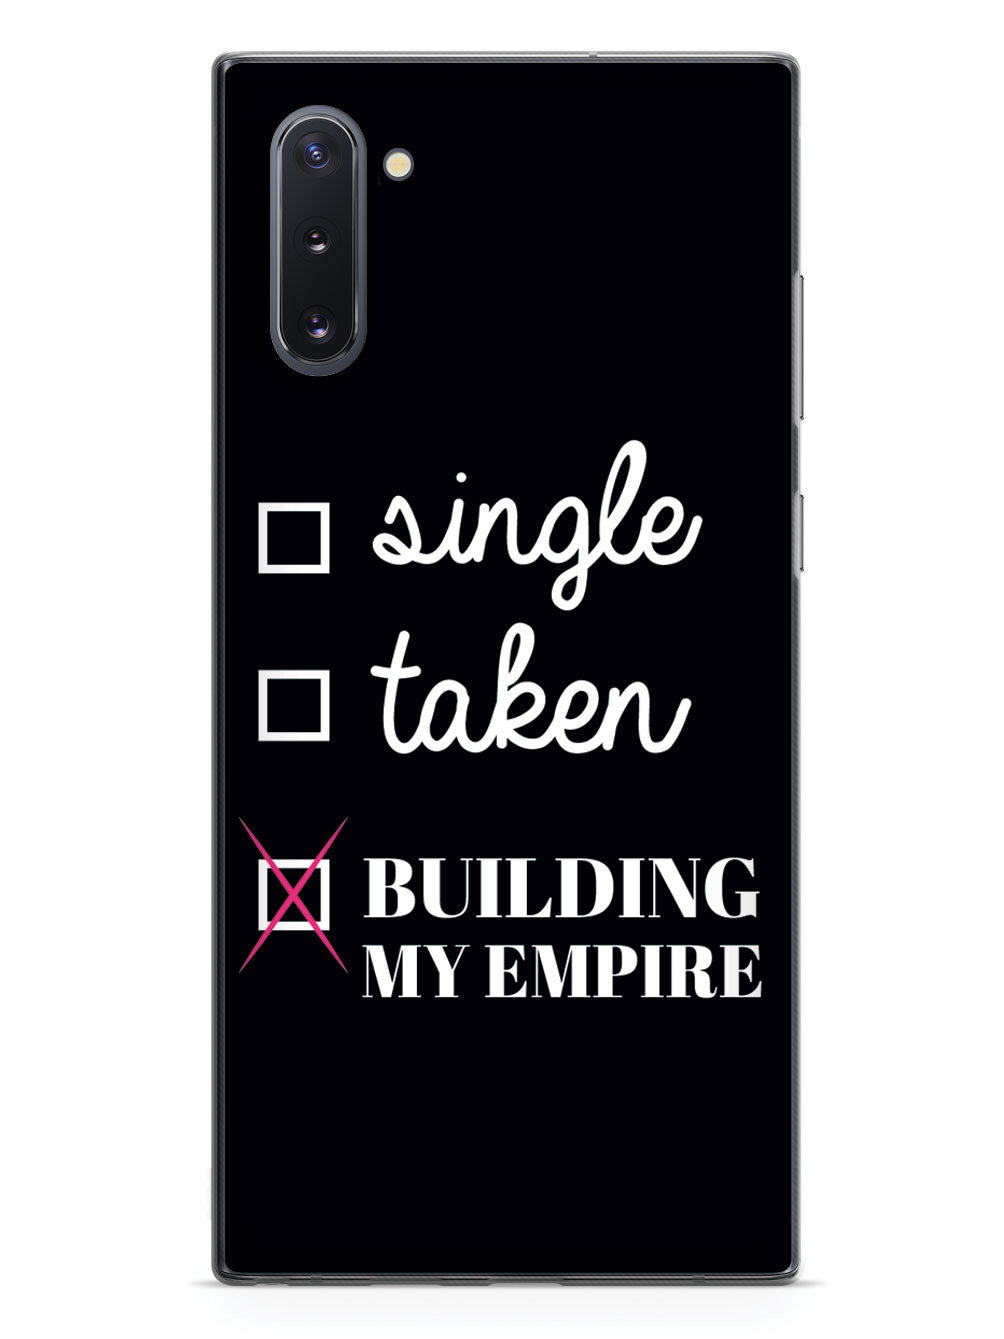 Building My Empire Case